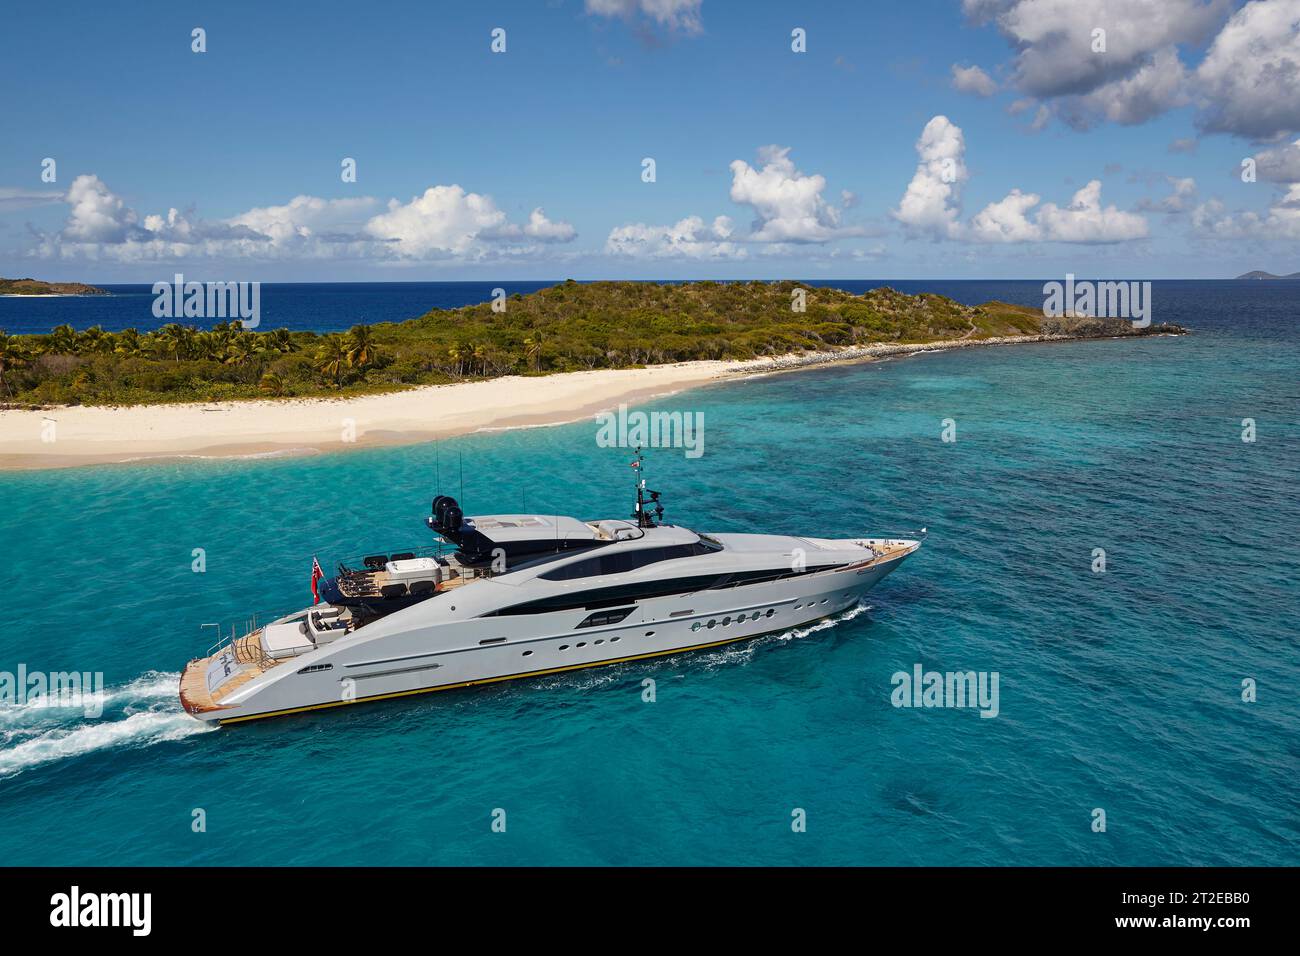 Palmer Johnson, yacht charter da 45 metri al largo di Green Cay, Little Jost Van Dyke, Tortola, nelle Isole Vergini britanniche. Foto Stock